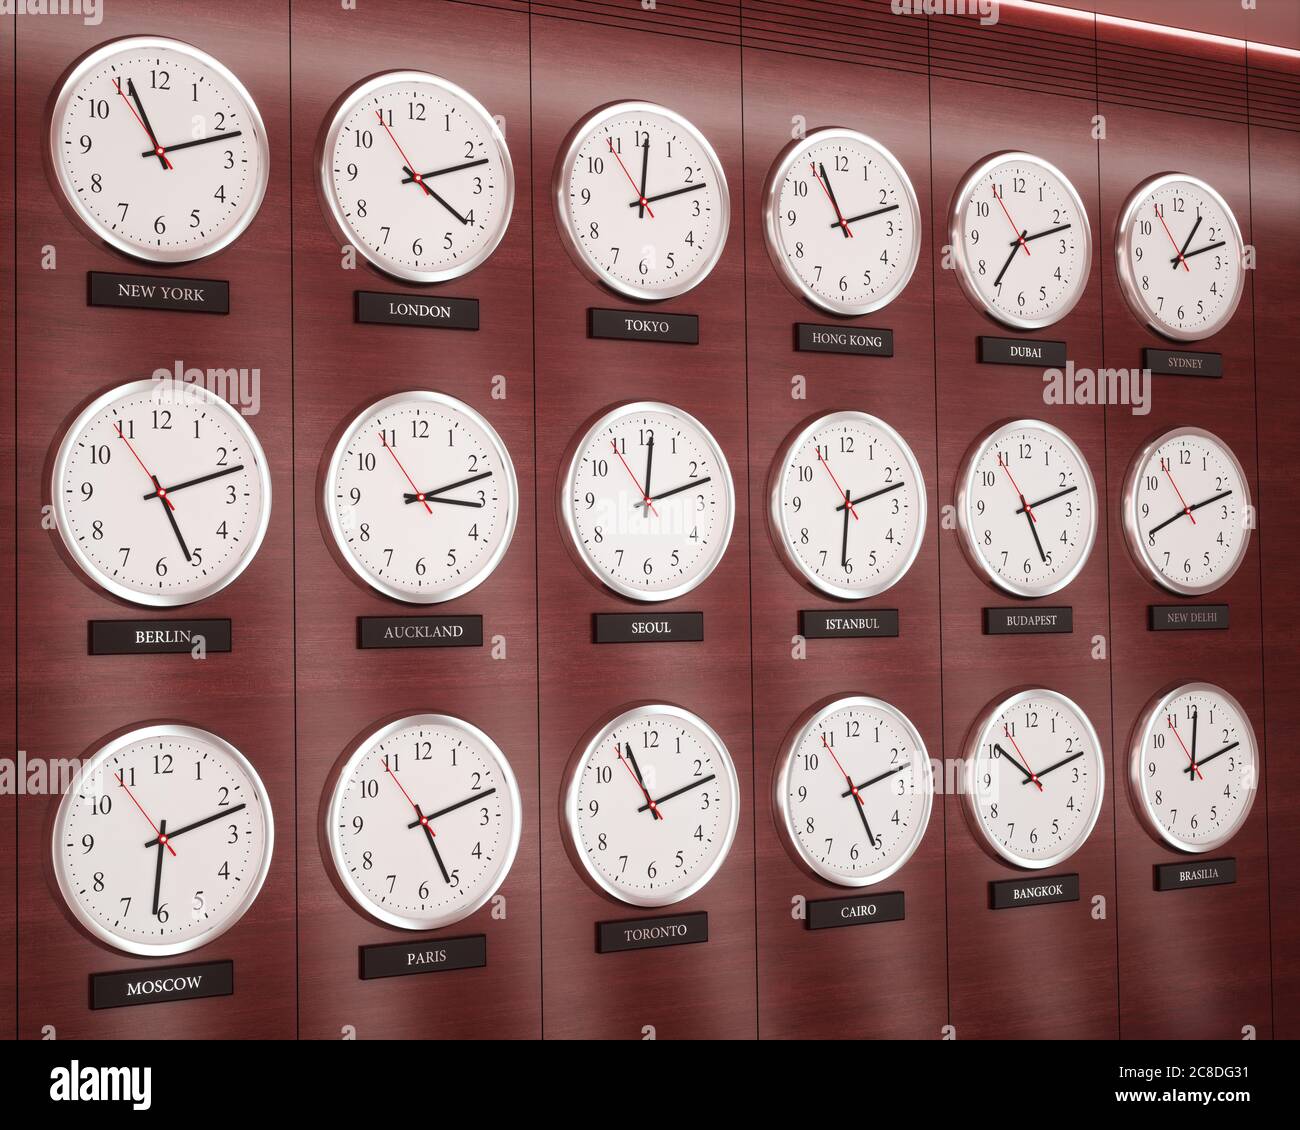 Weltzeituhr. Uhren an der Wand, die die Zeit rund um die Welt zeigen  Stockfotografie - Alamy